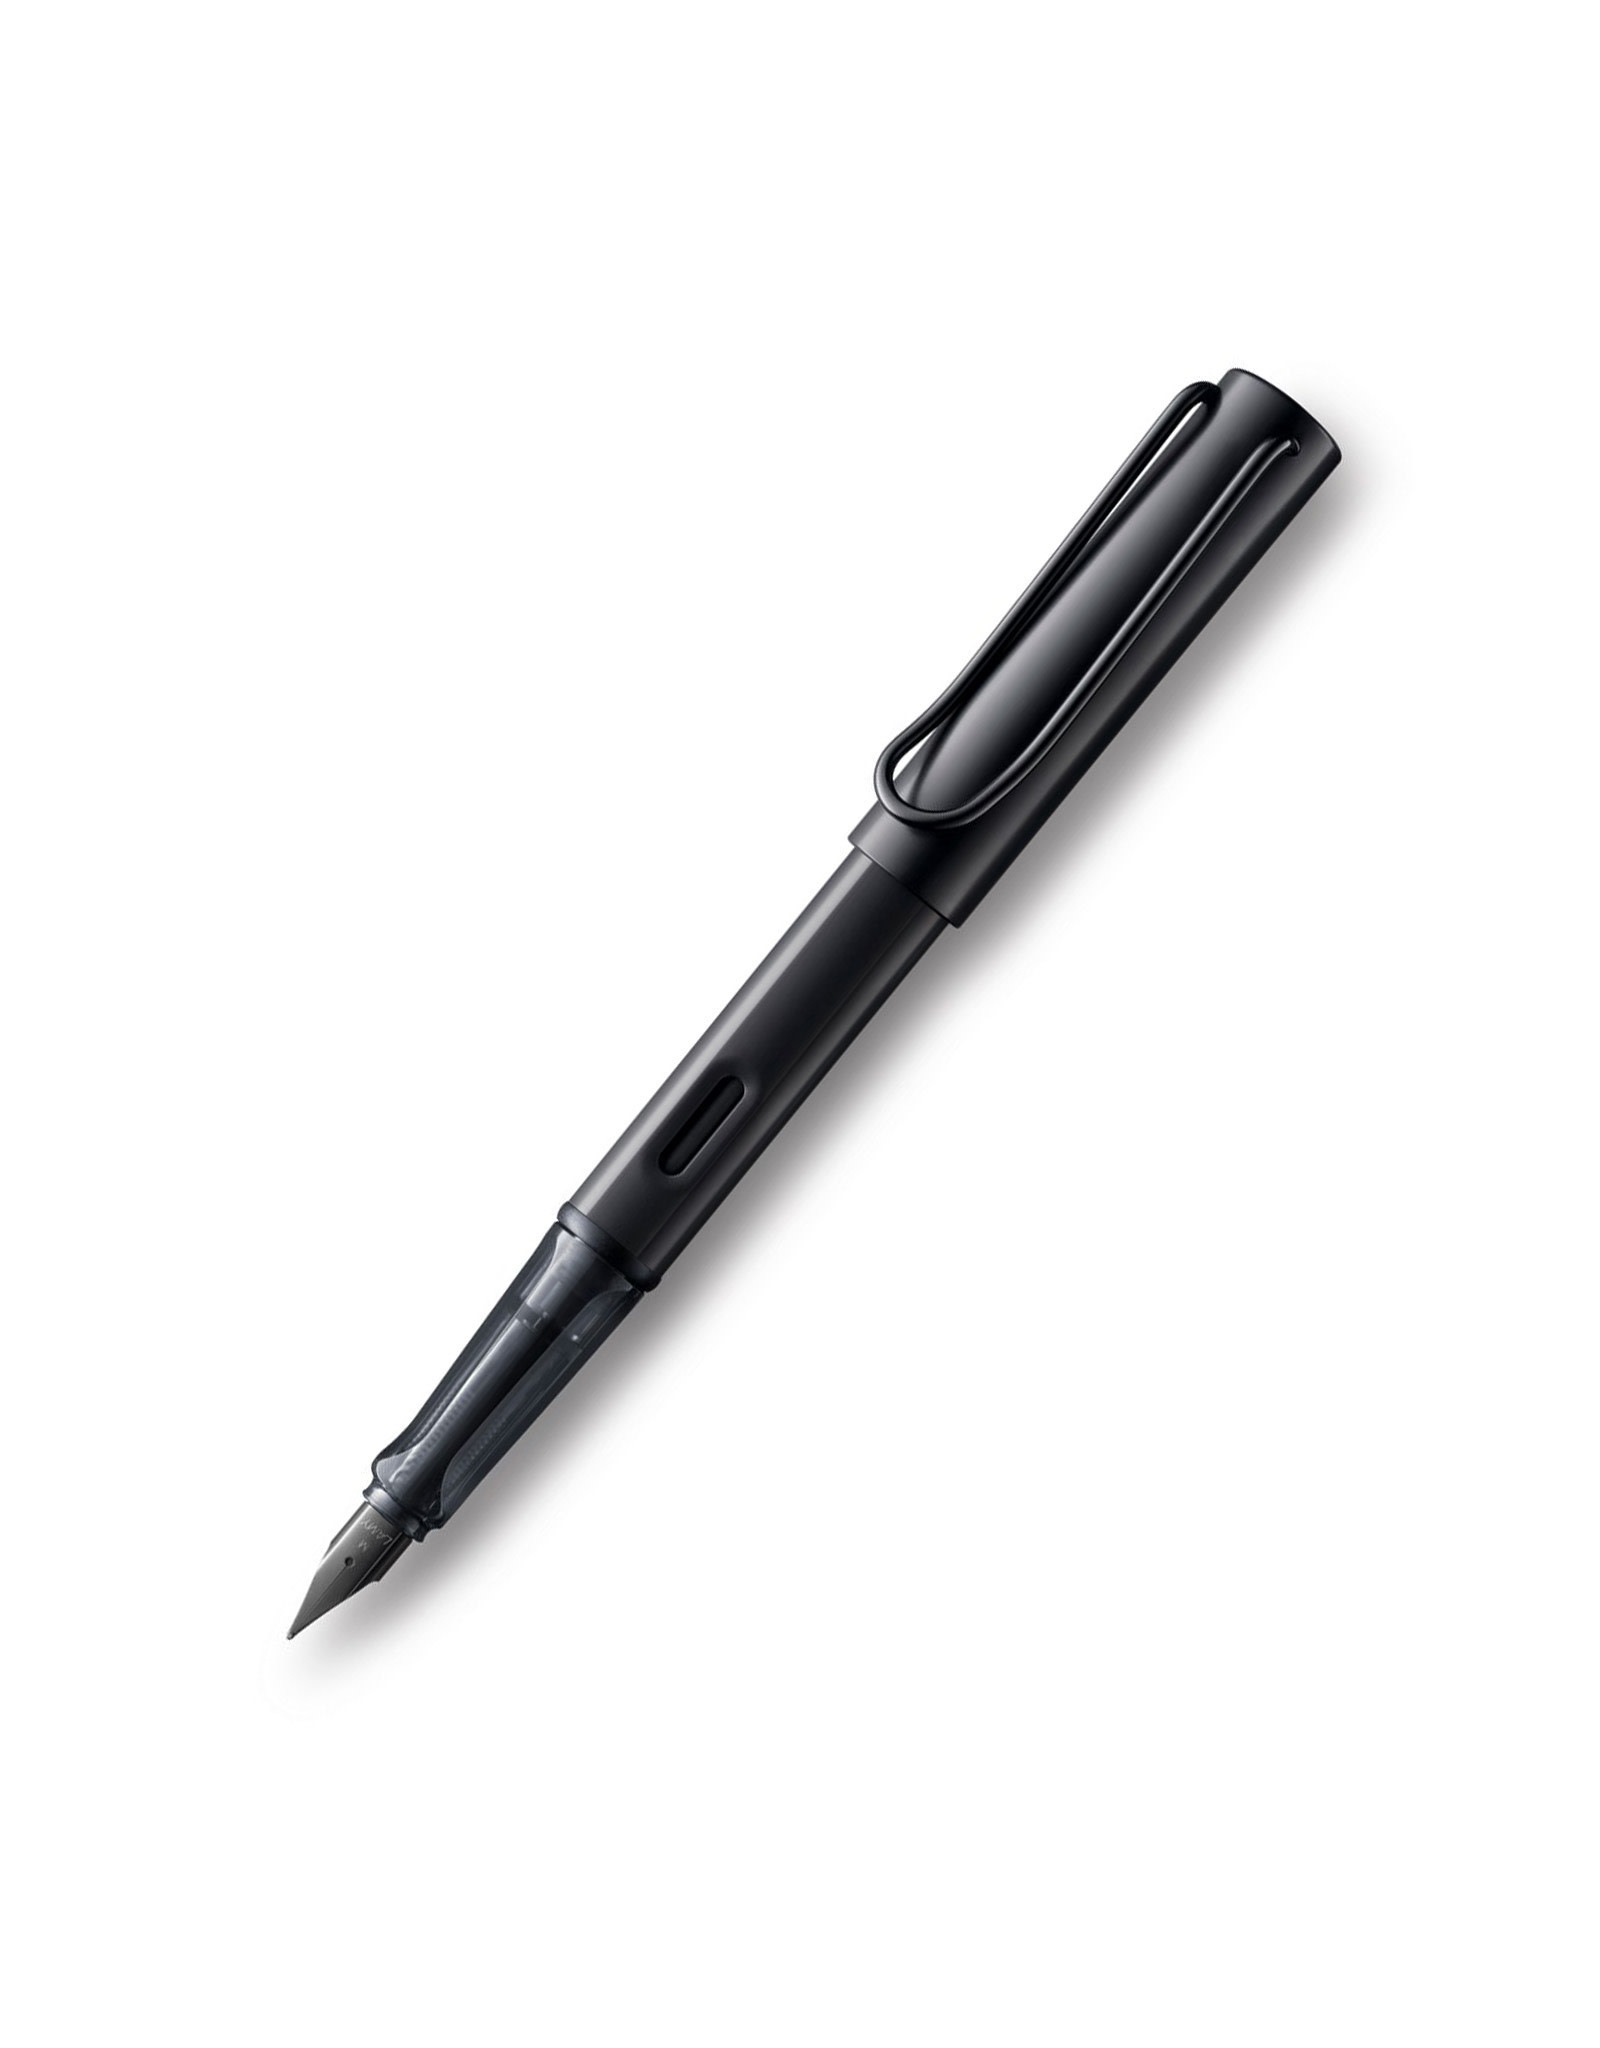 LAMY LAMY Al-Star Fountain Pen, Black (F)